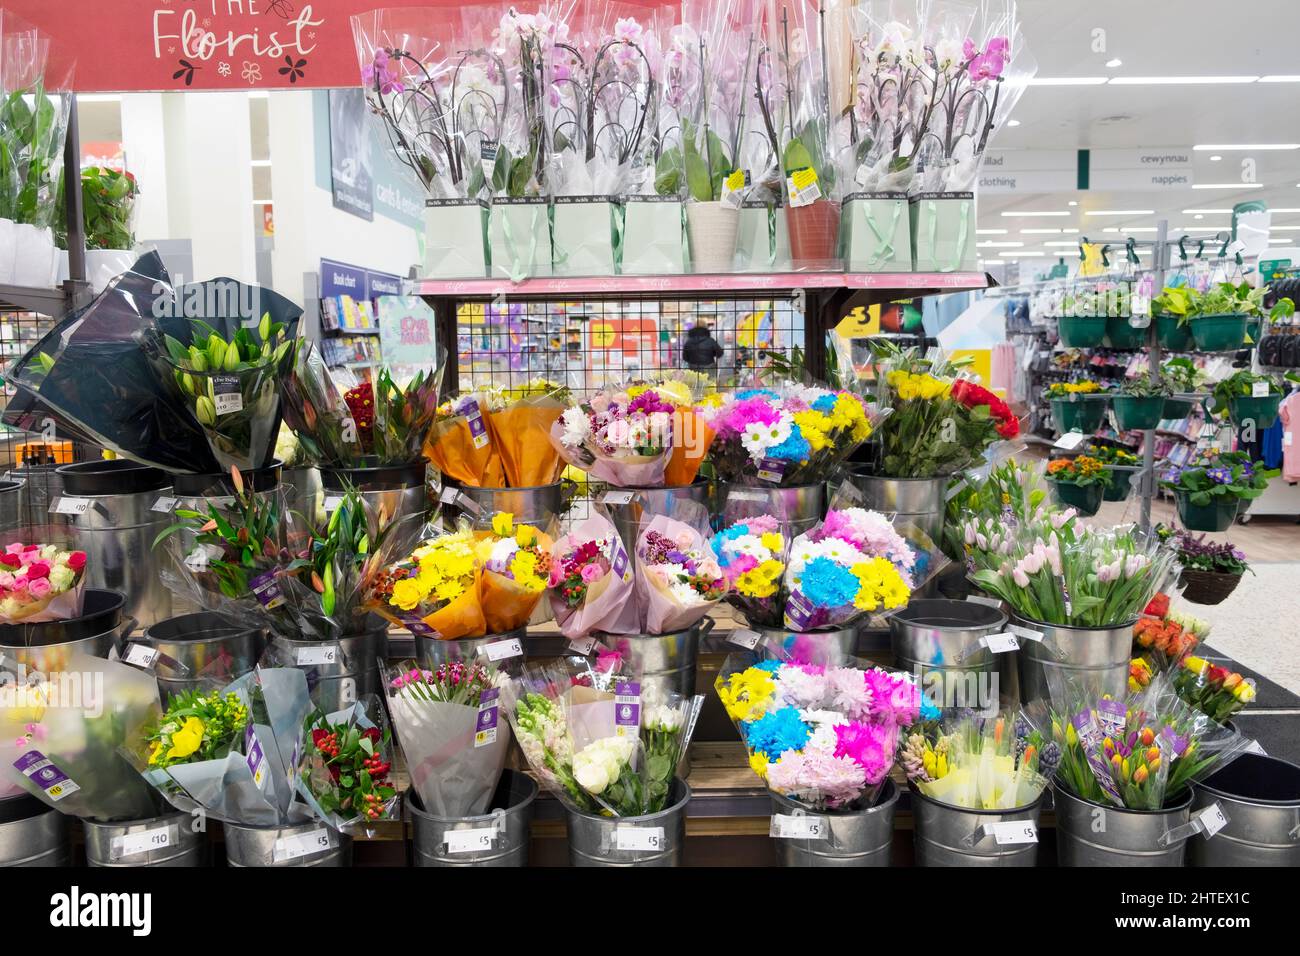 Floral Florist Display von geschnittenen Blumen in britischen Kindergärten auf Regalen im Supermarkt Morrisons gewachsen Februar 2022 Großbritannien Großbritannien KATHY DEWITT Stockfoto